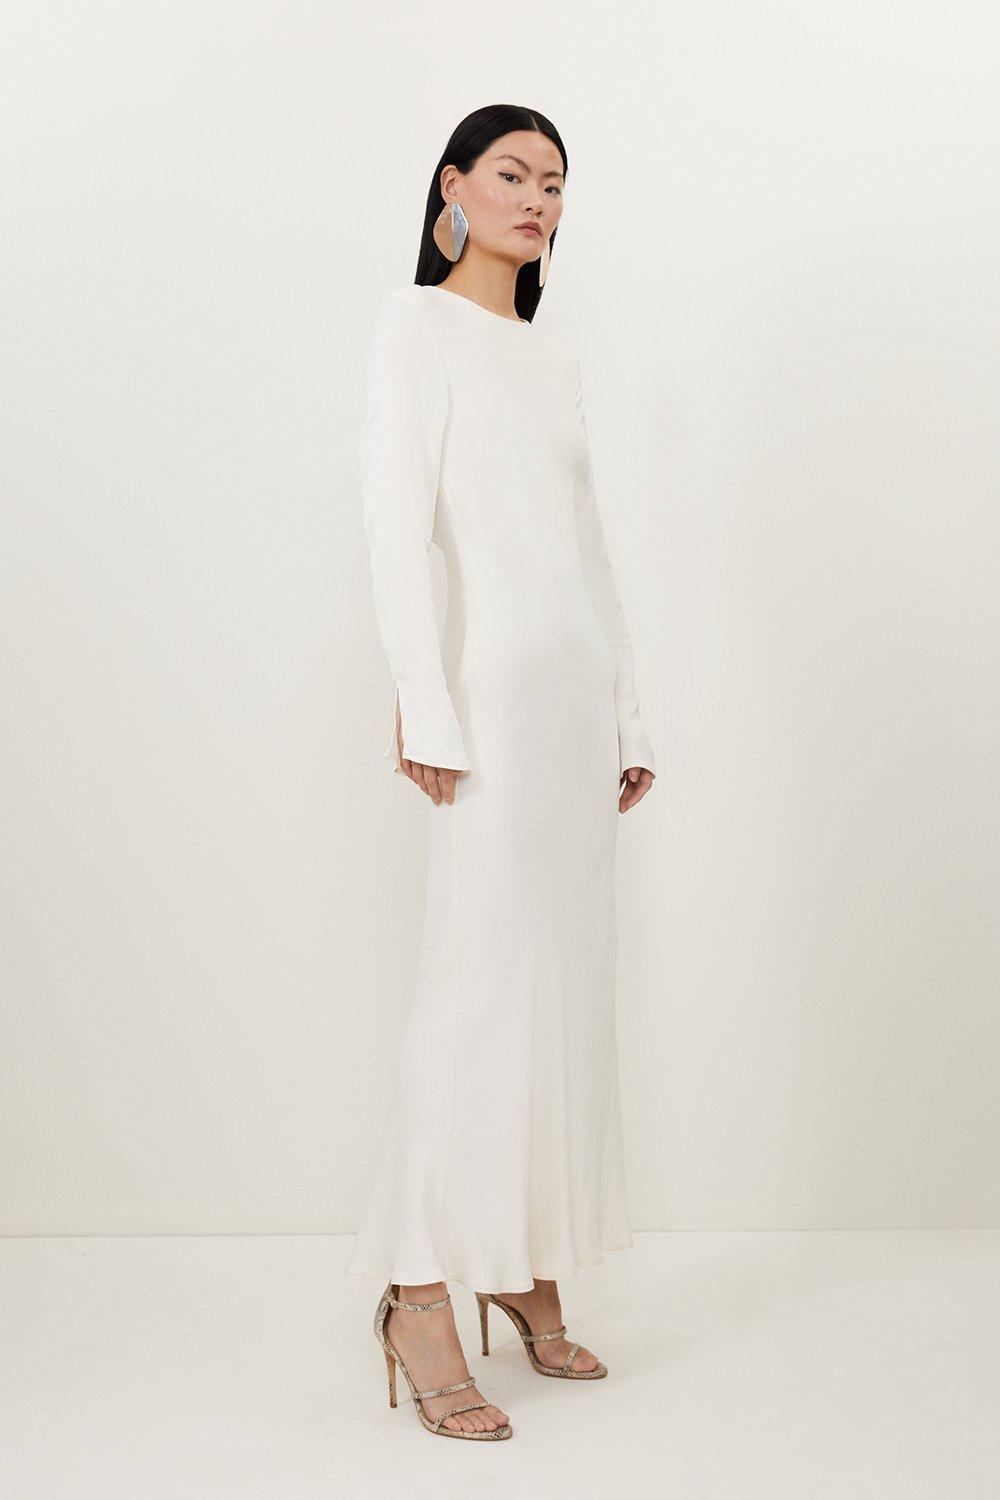 Viscose Satin Woven Long Sleeve Maxi Dress | Karen Millen